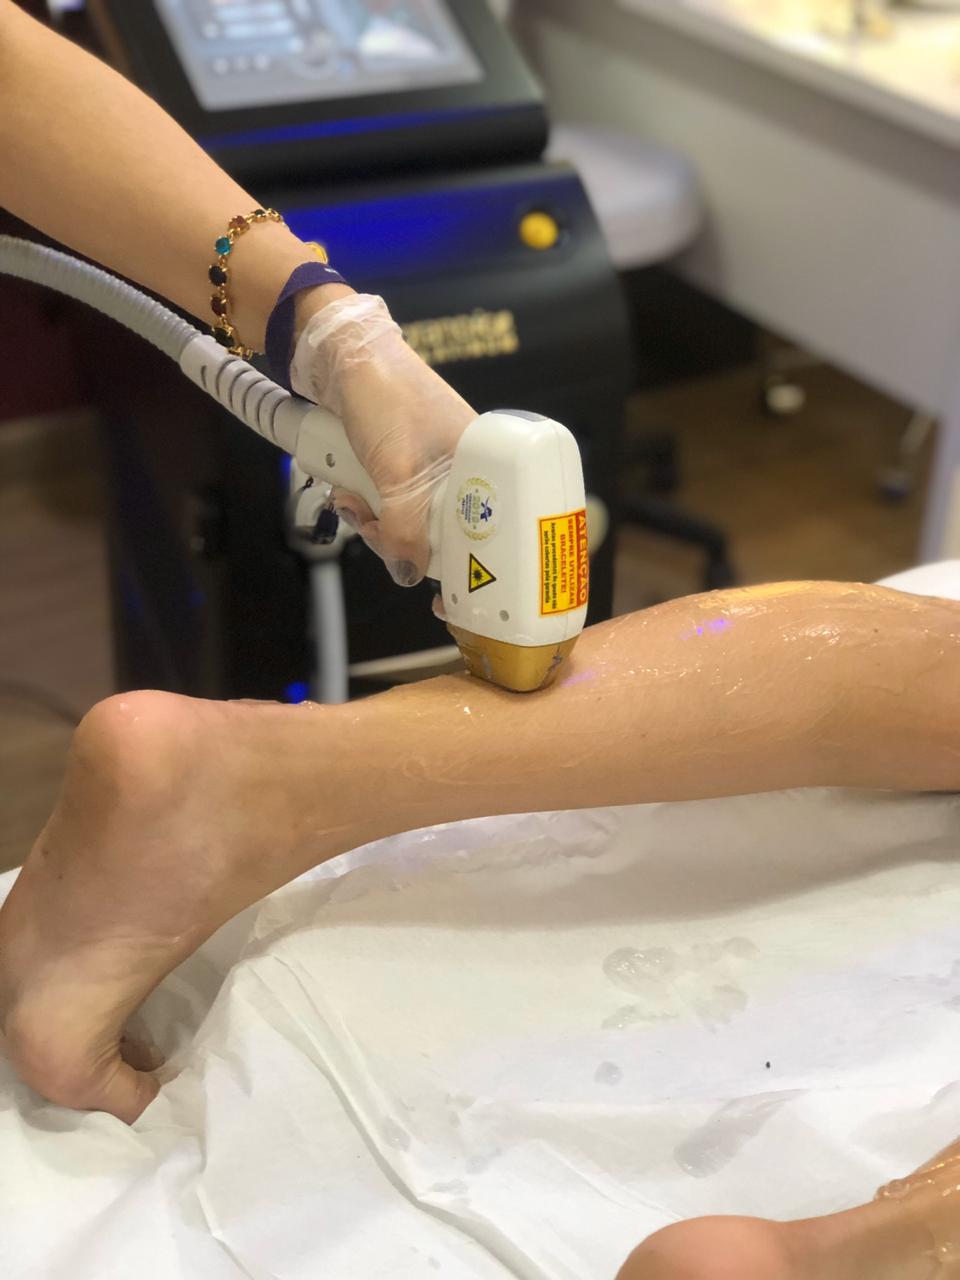 De pernas pro ar: pernas lisinhas com depilação a laser